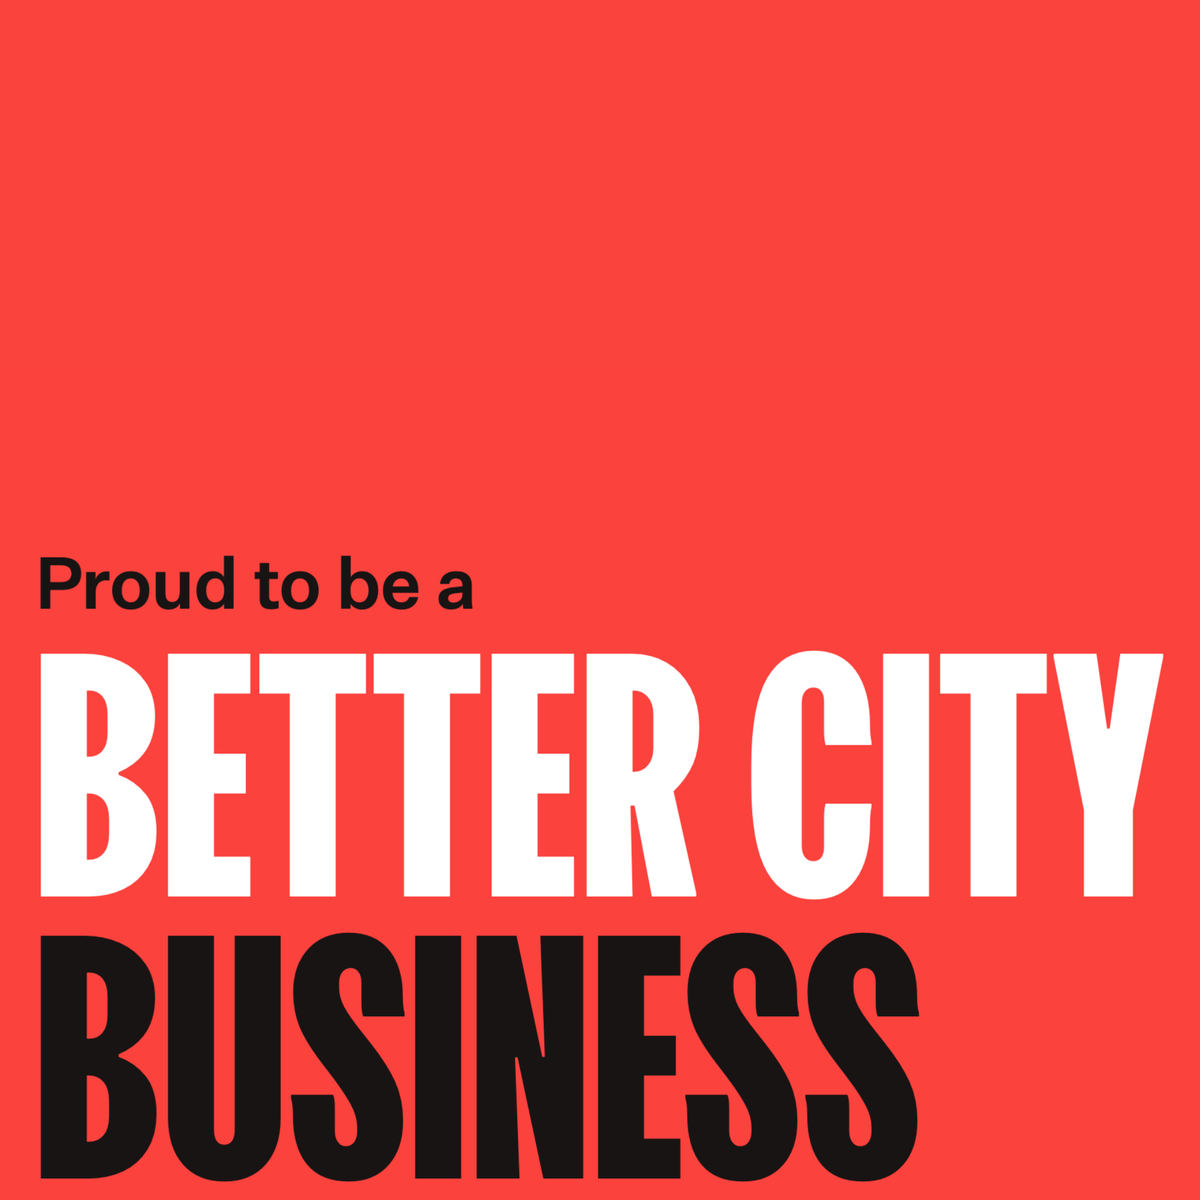 Better City Business